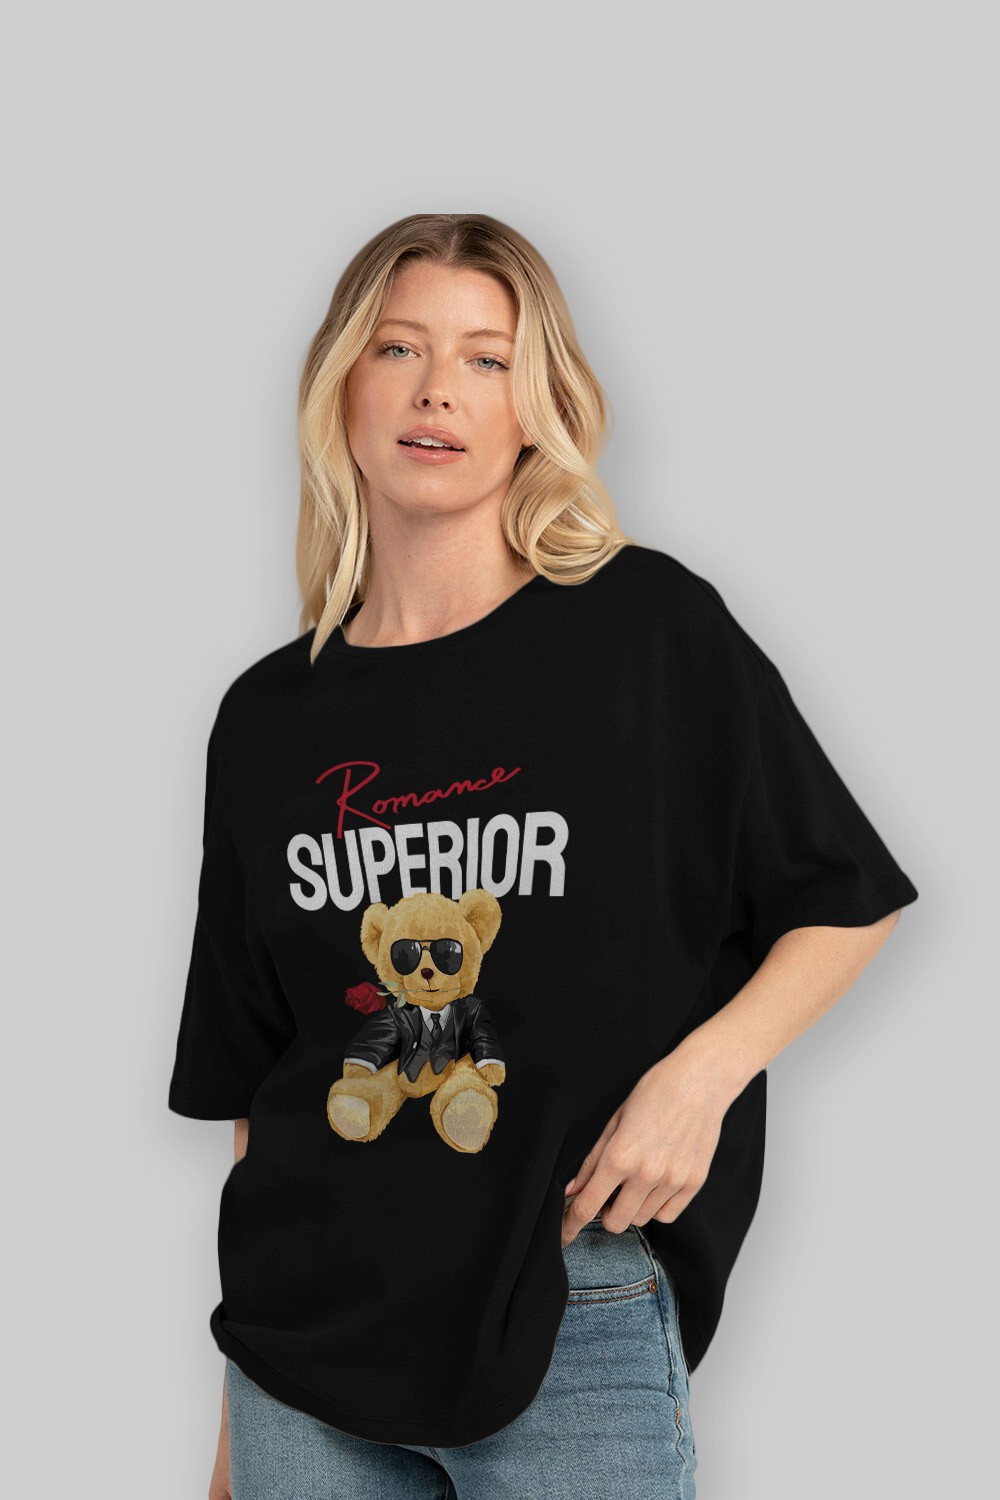 Teddy Bear Romance Superior Ön Baskılı Oversize t-shirt Erkek Kadın Unisex %100 Pamuk